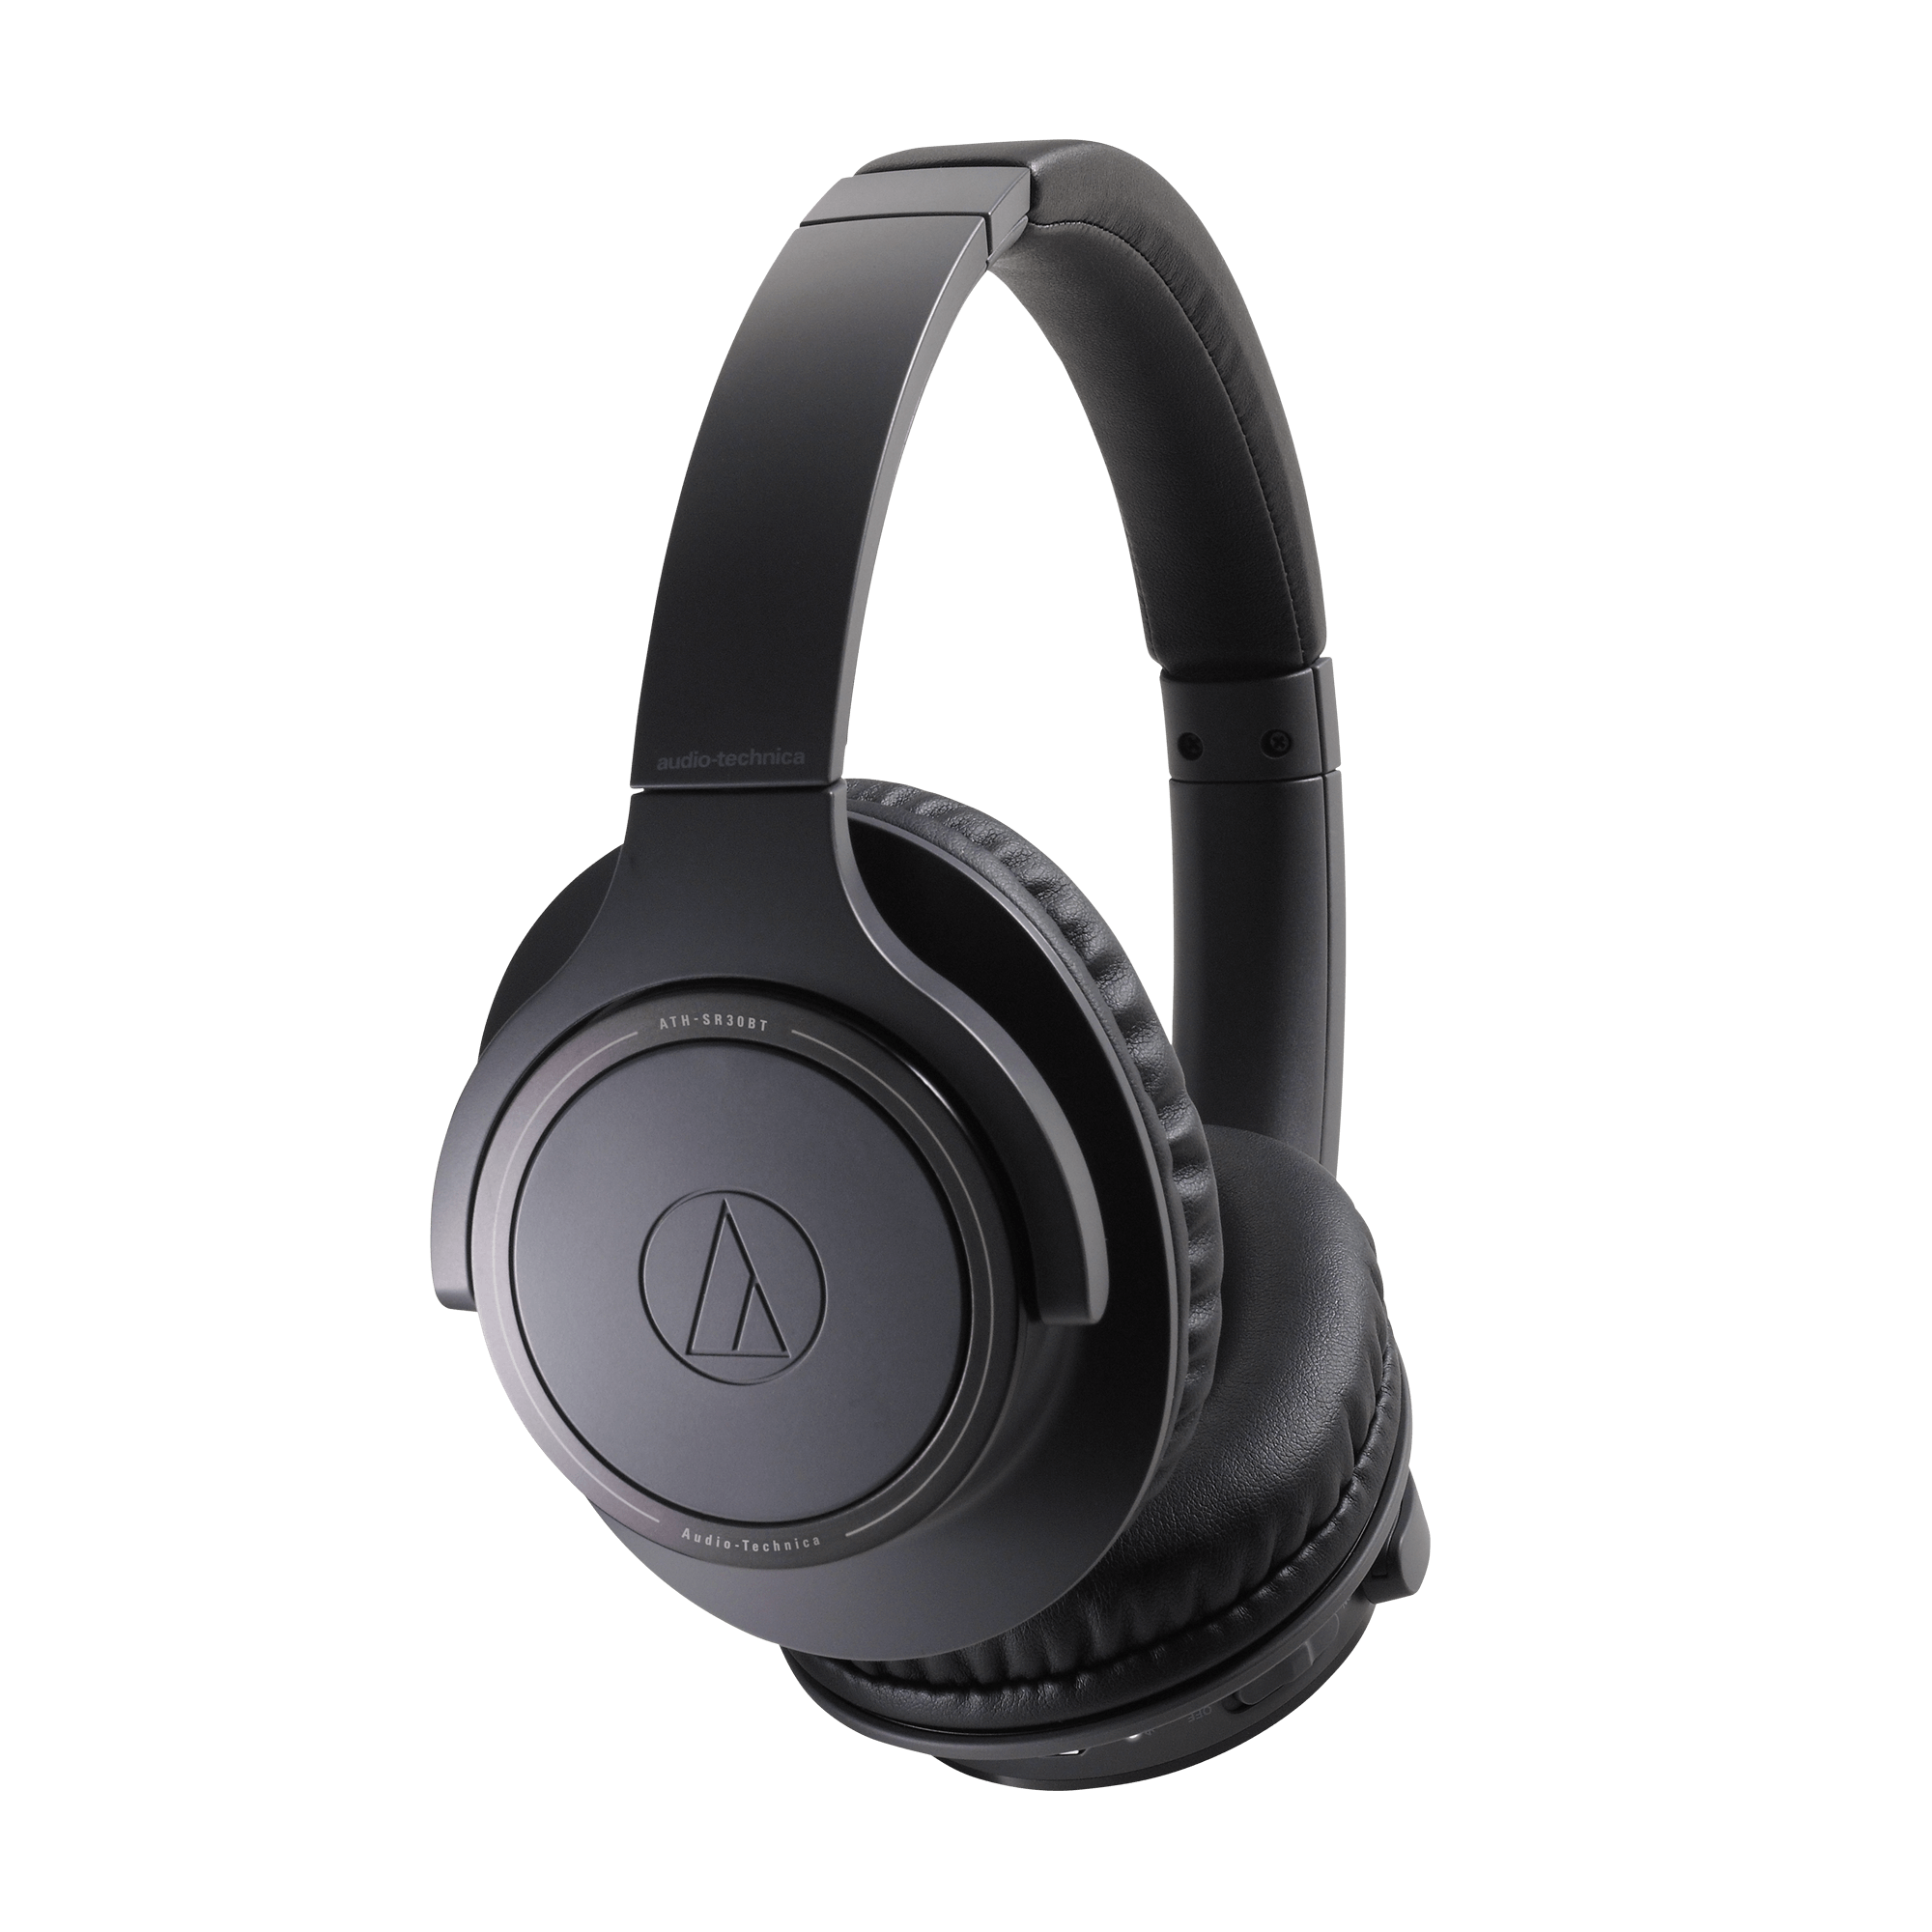 シリアルシール付 Audio-Technica ATH-SR30BT Wireless Headphones Black 並行輸入品 